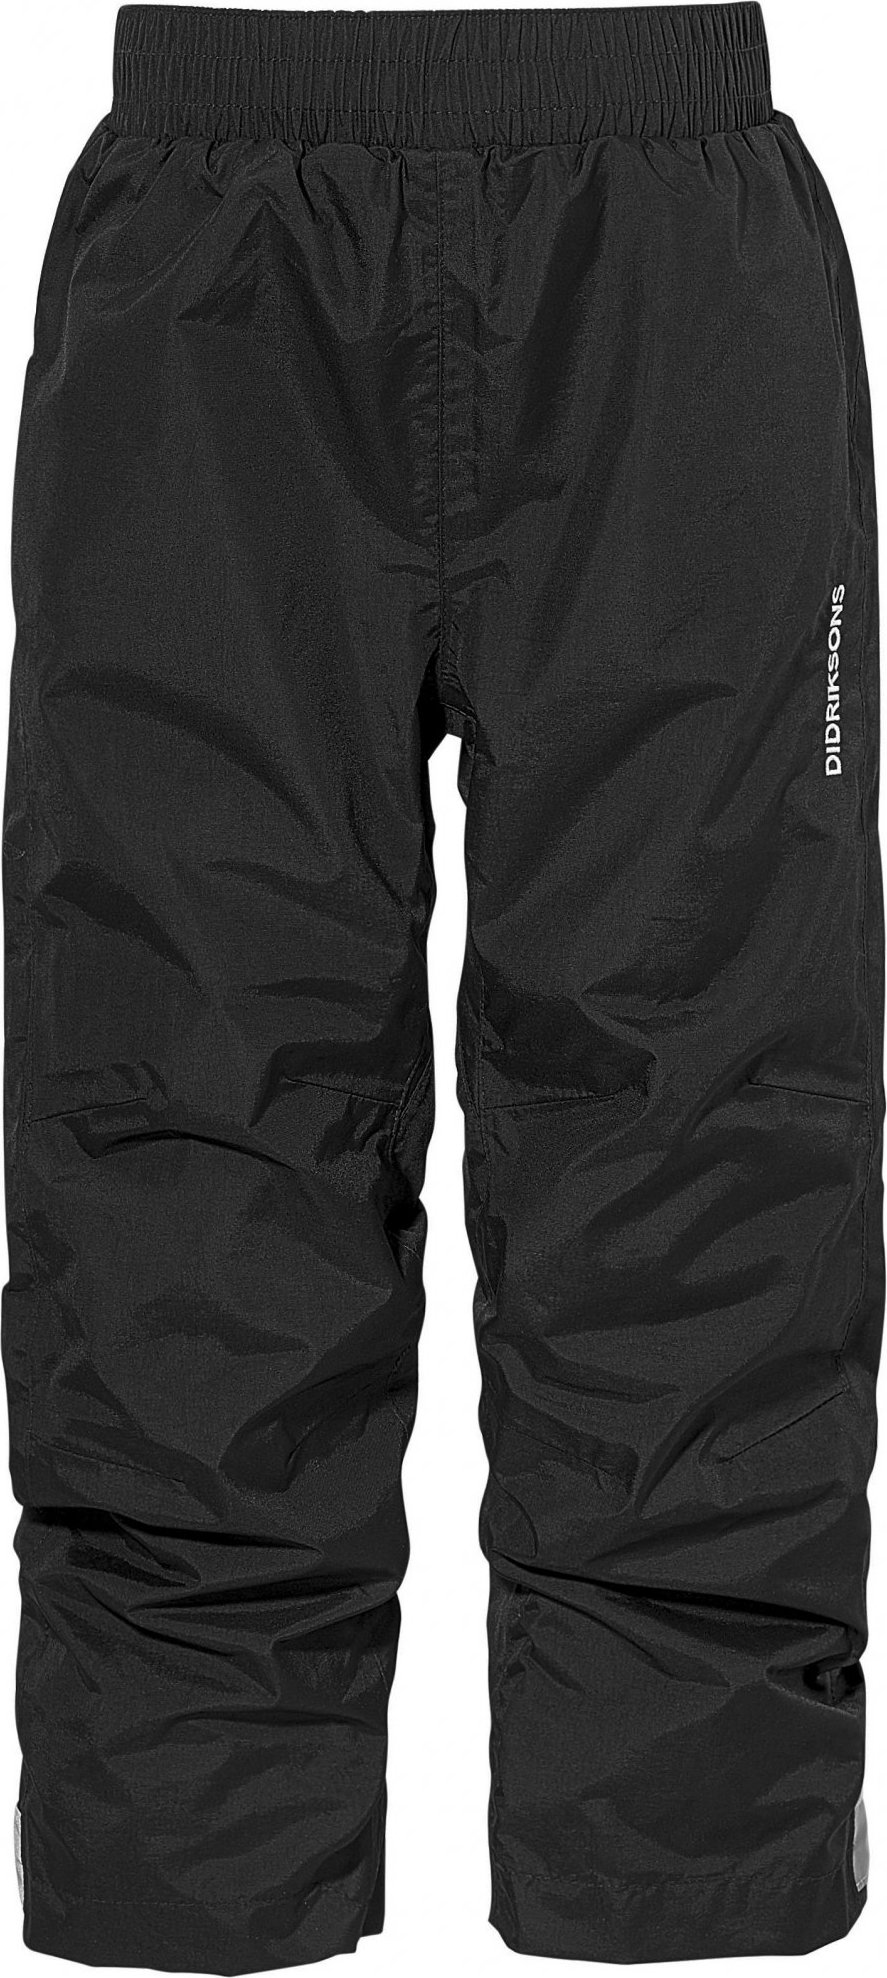 Dětské outdoorové kalhoty DIDRIKSONS Nobi černé Velikost: 80